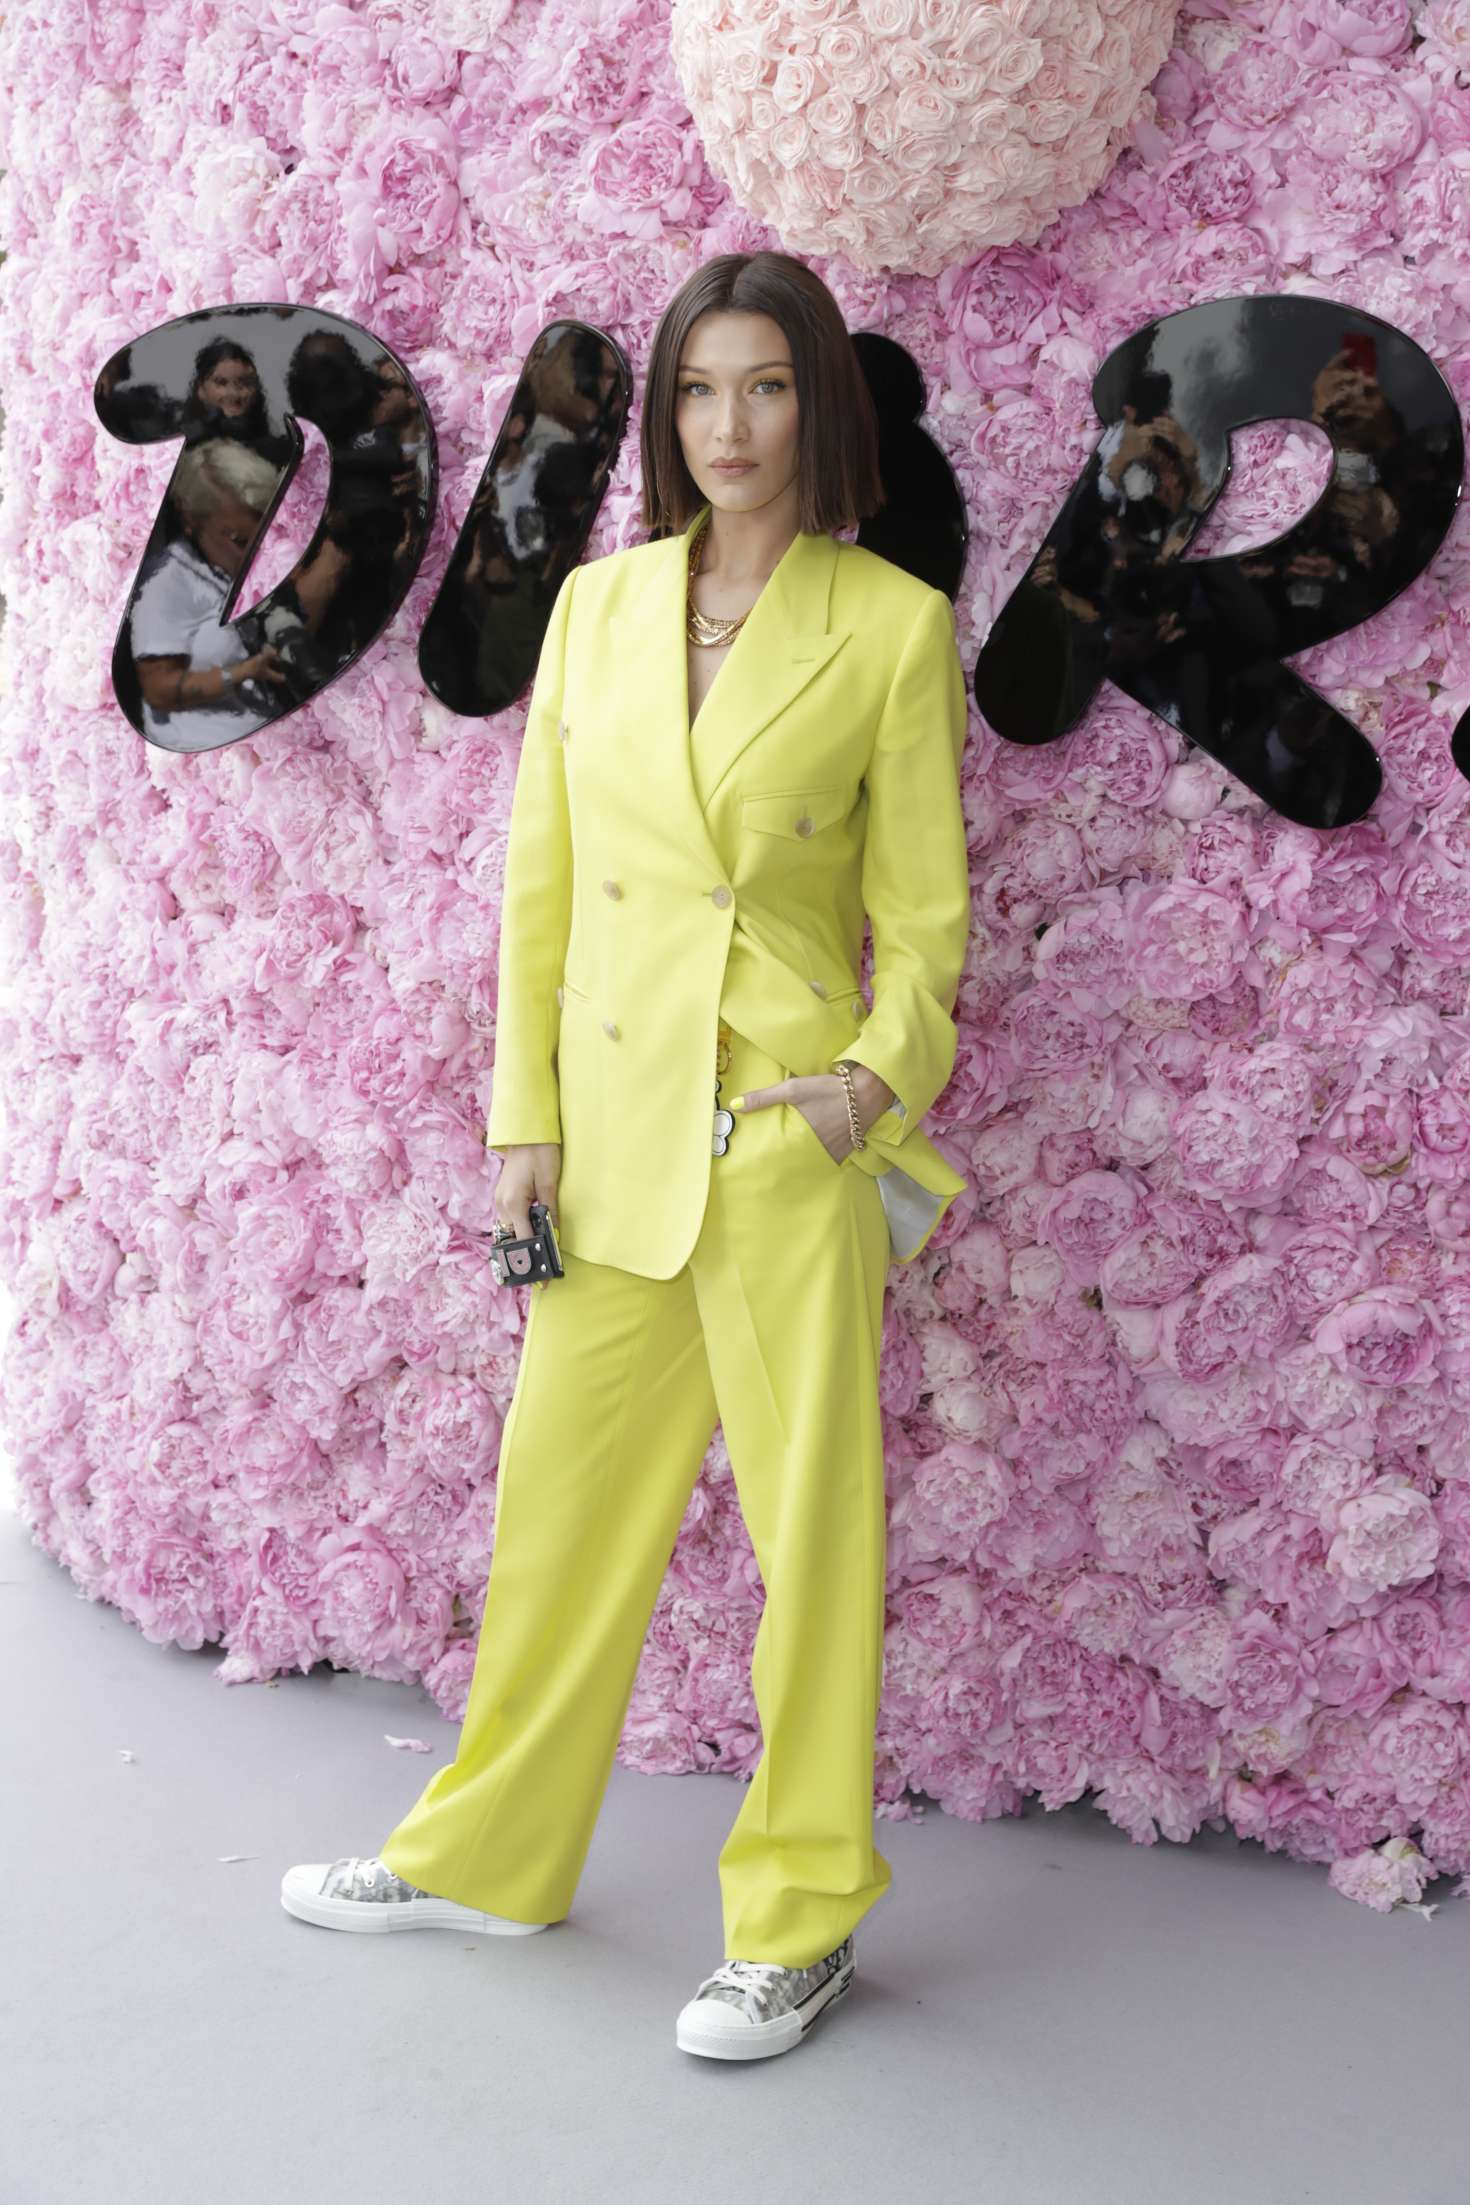 Bella Hadid â€“ Dior Homme Show SS 2019 at Paris Fashion Week